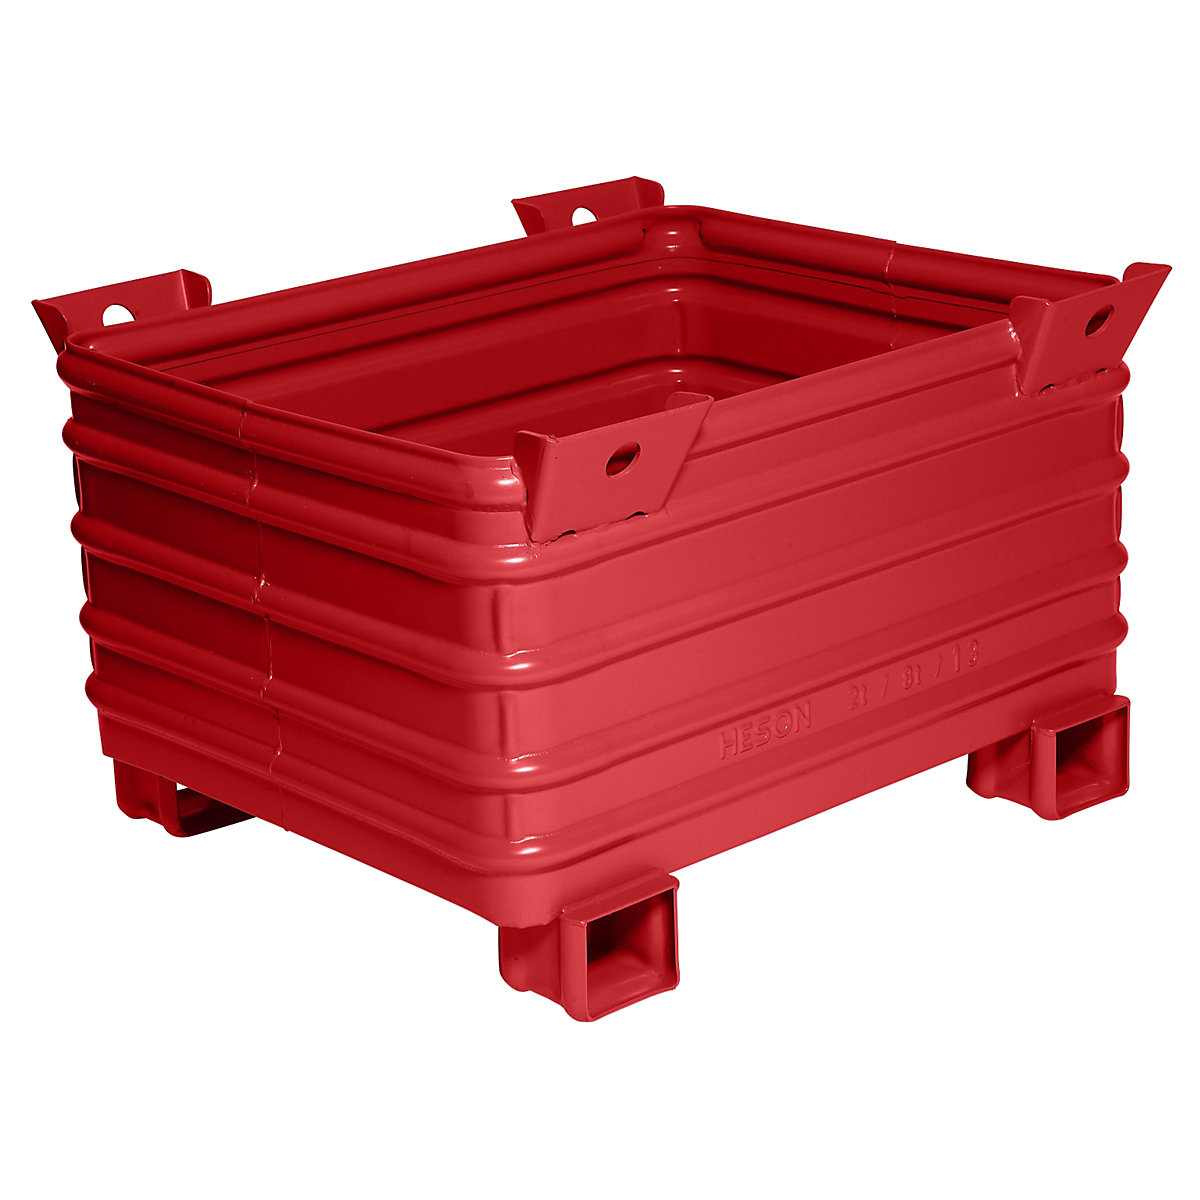 Stapelbak voor zware lasten – Heson, b x l = 800 x 1000 mm, met U-vormige poten, rood gelakt, vanaf 10 stuks-3